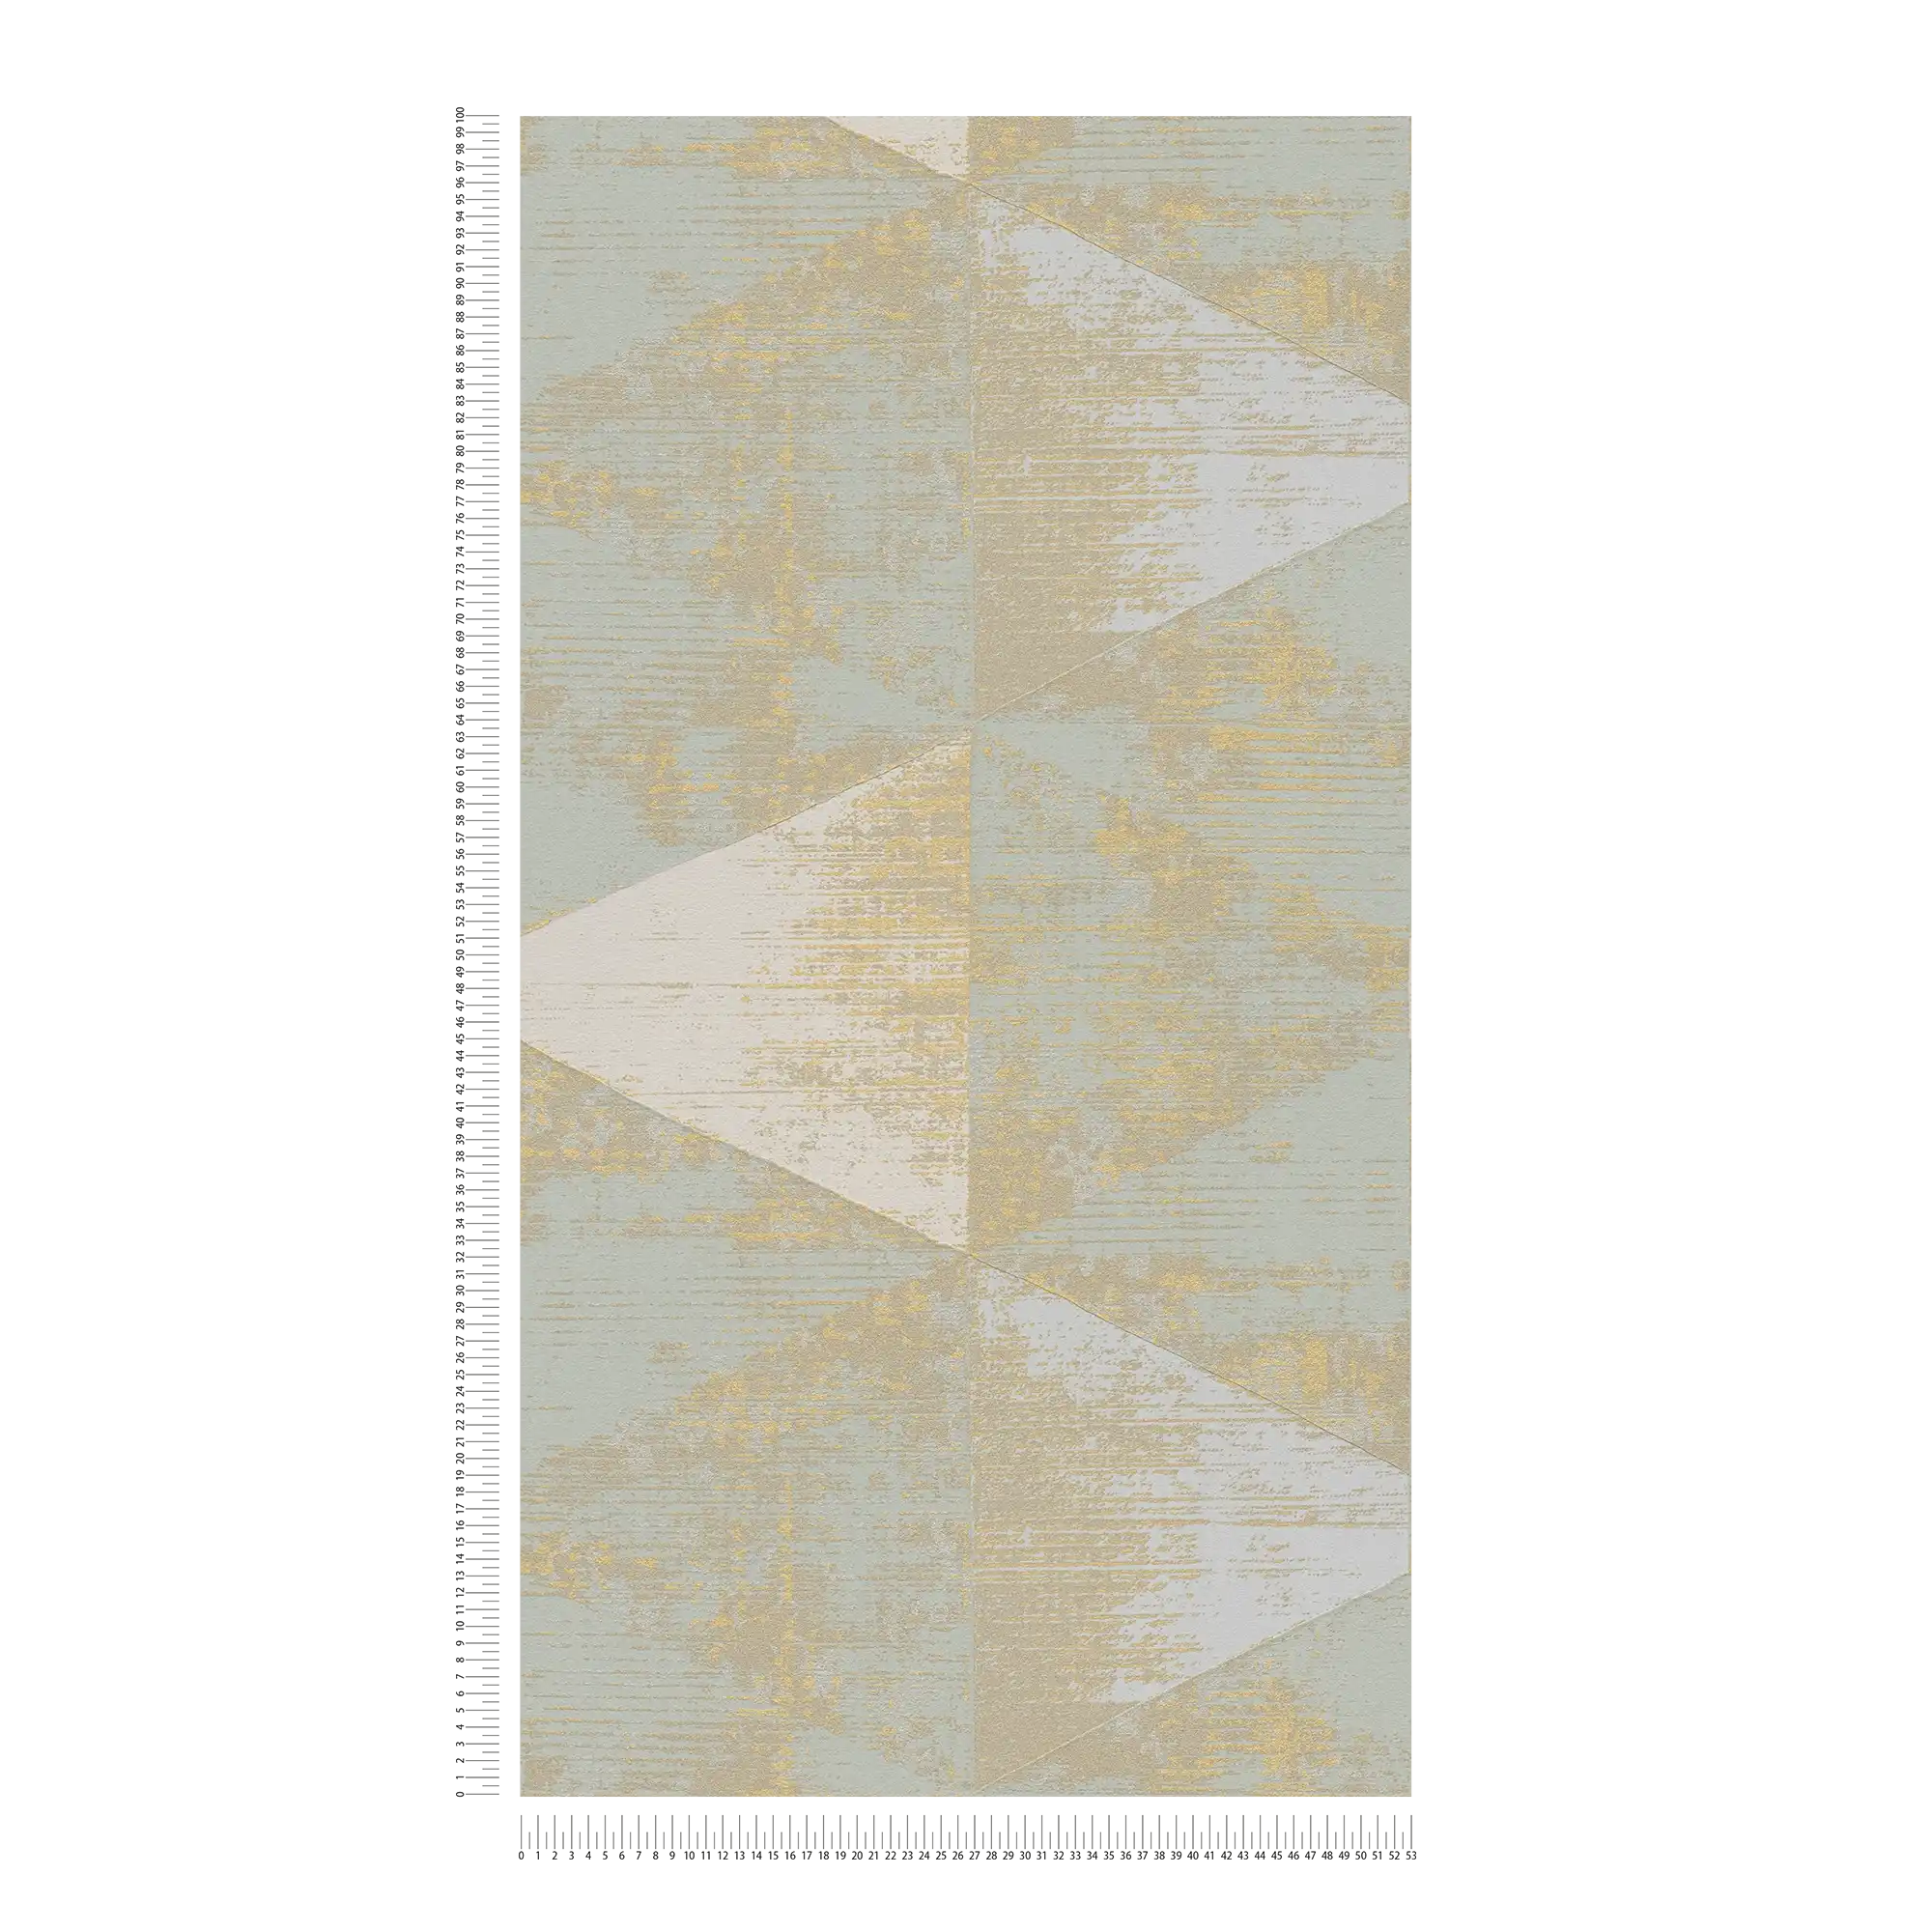             Vliesbehang facetpatroon met metallic accent - metallic, crème, beige
        